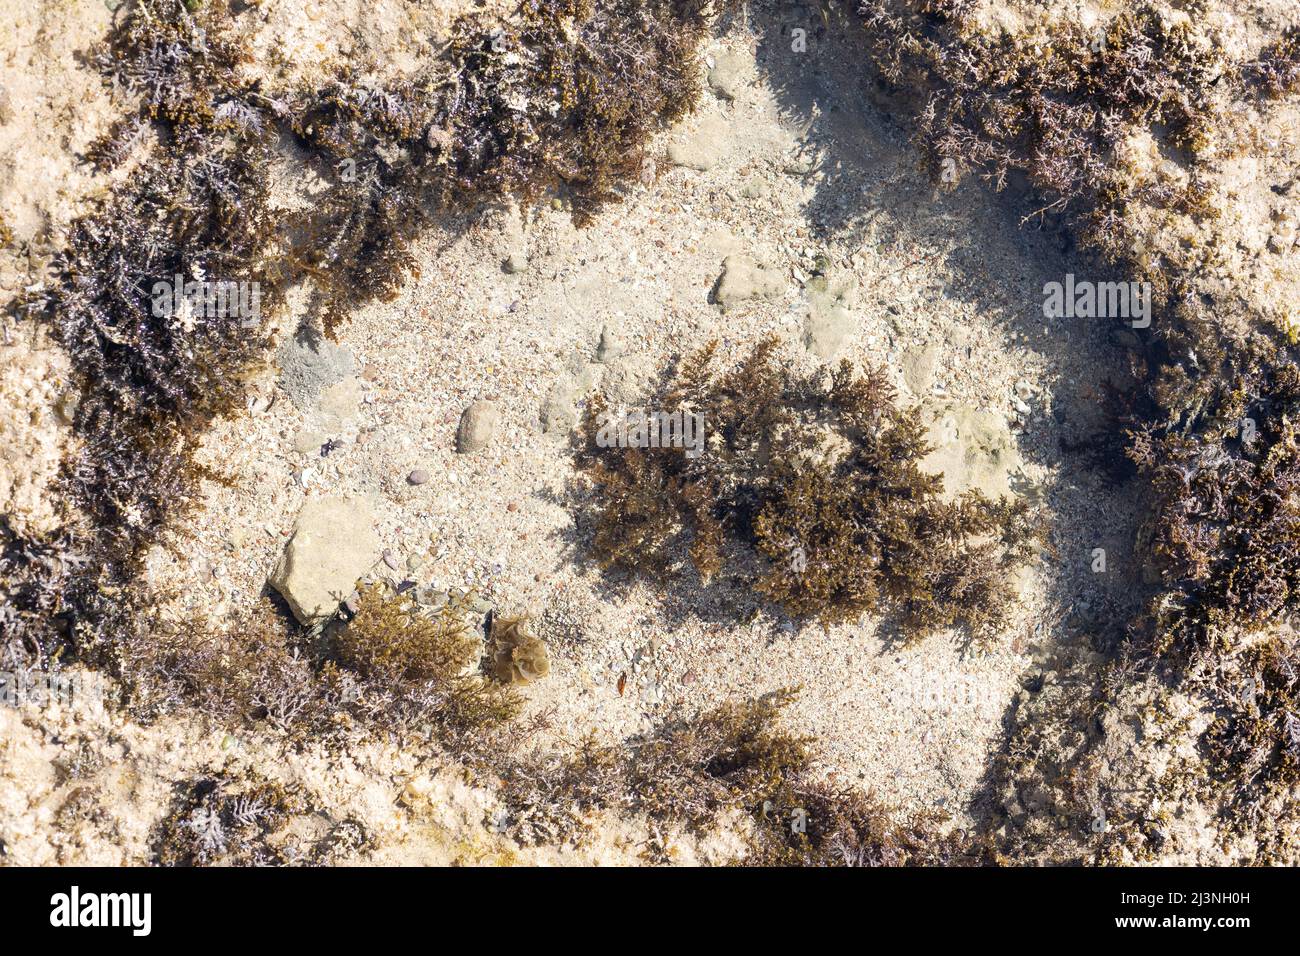 Gros plan de corail mort sur la plage Banque D'Images